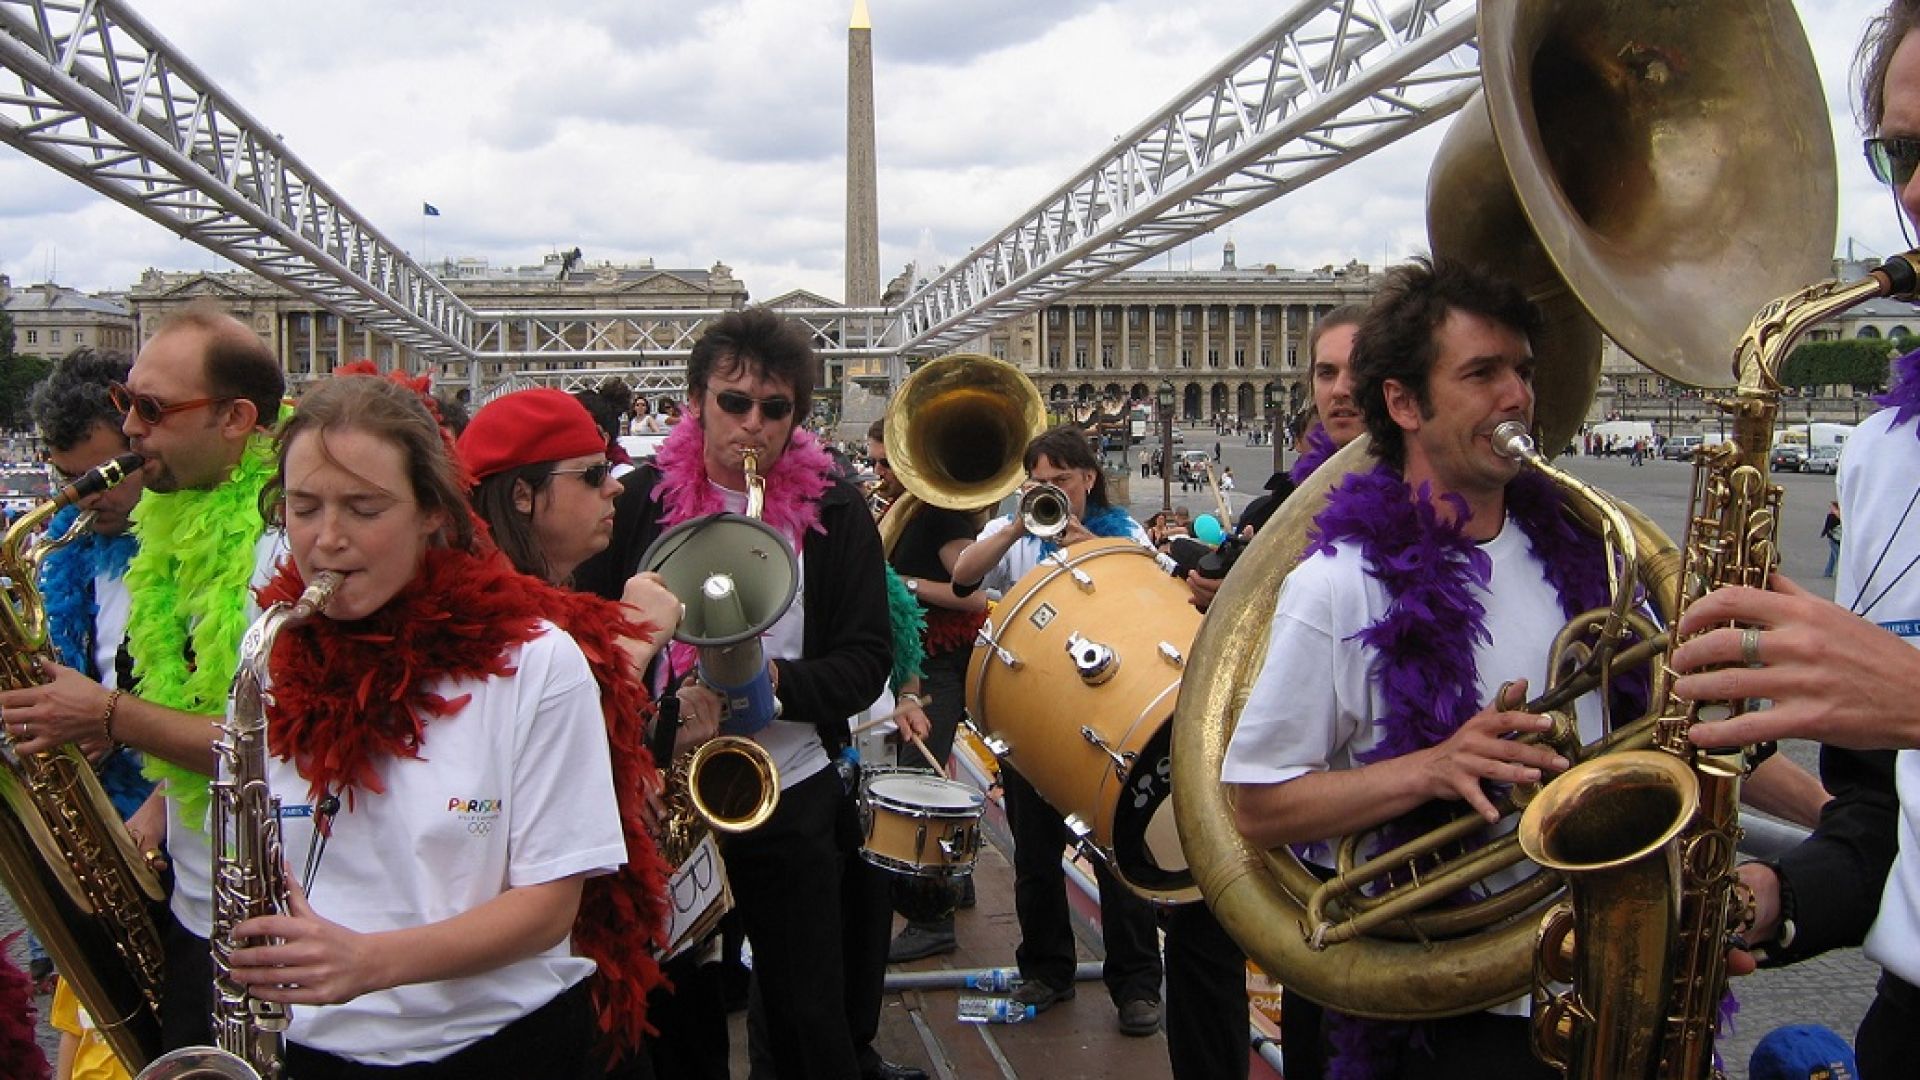 Mardi Brass Band